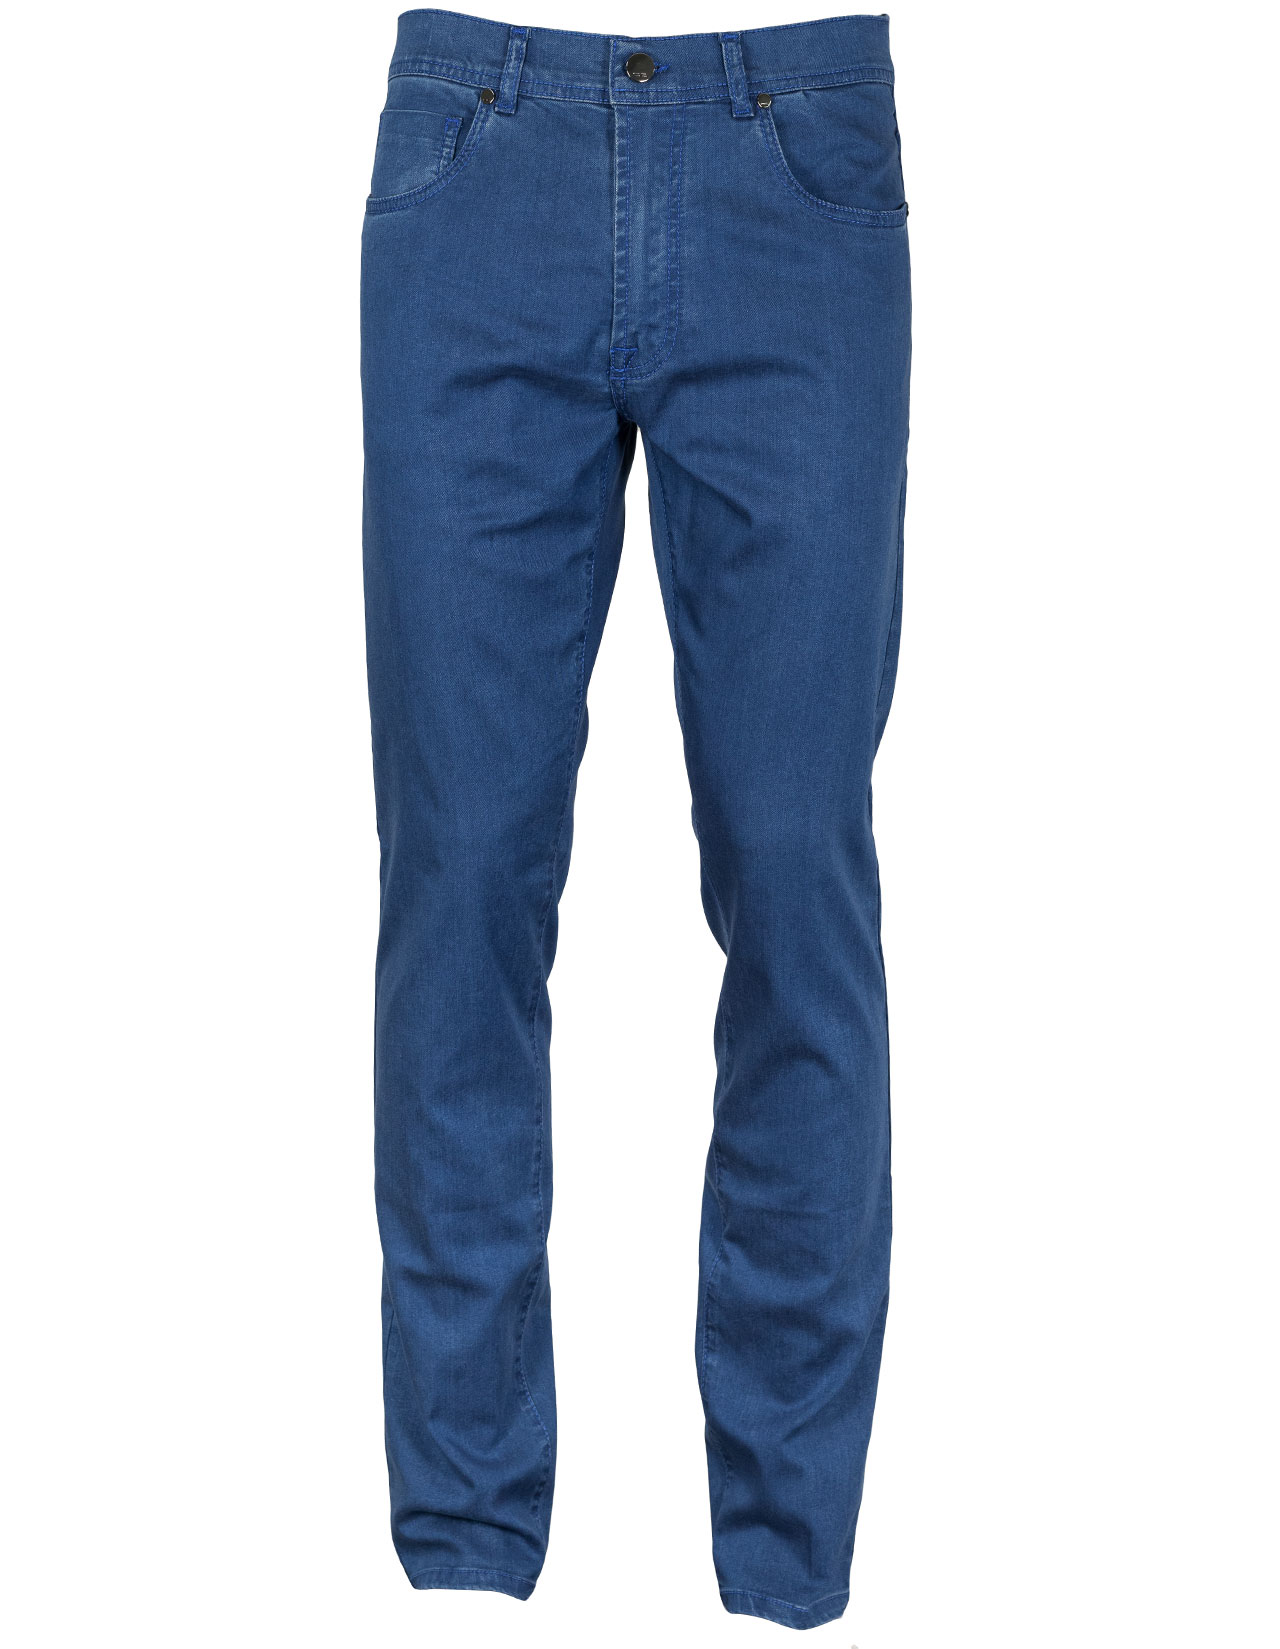 Cesare Attolini Jeans in blau aus dünnem Stoff 